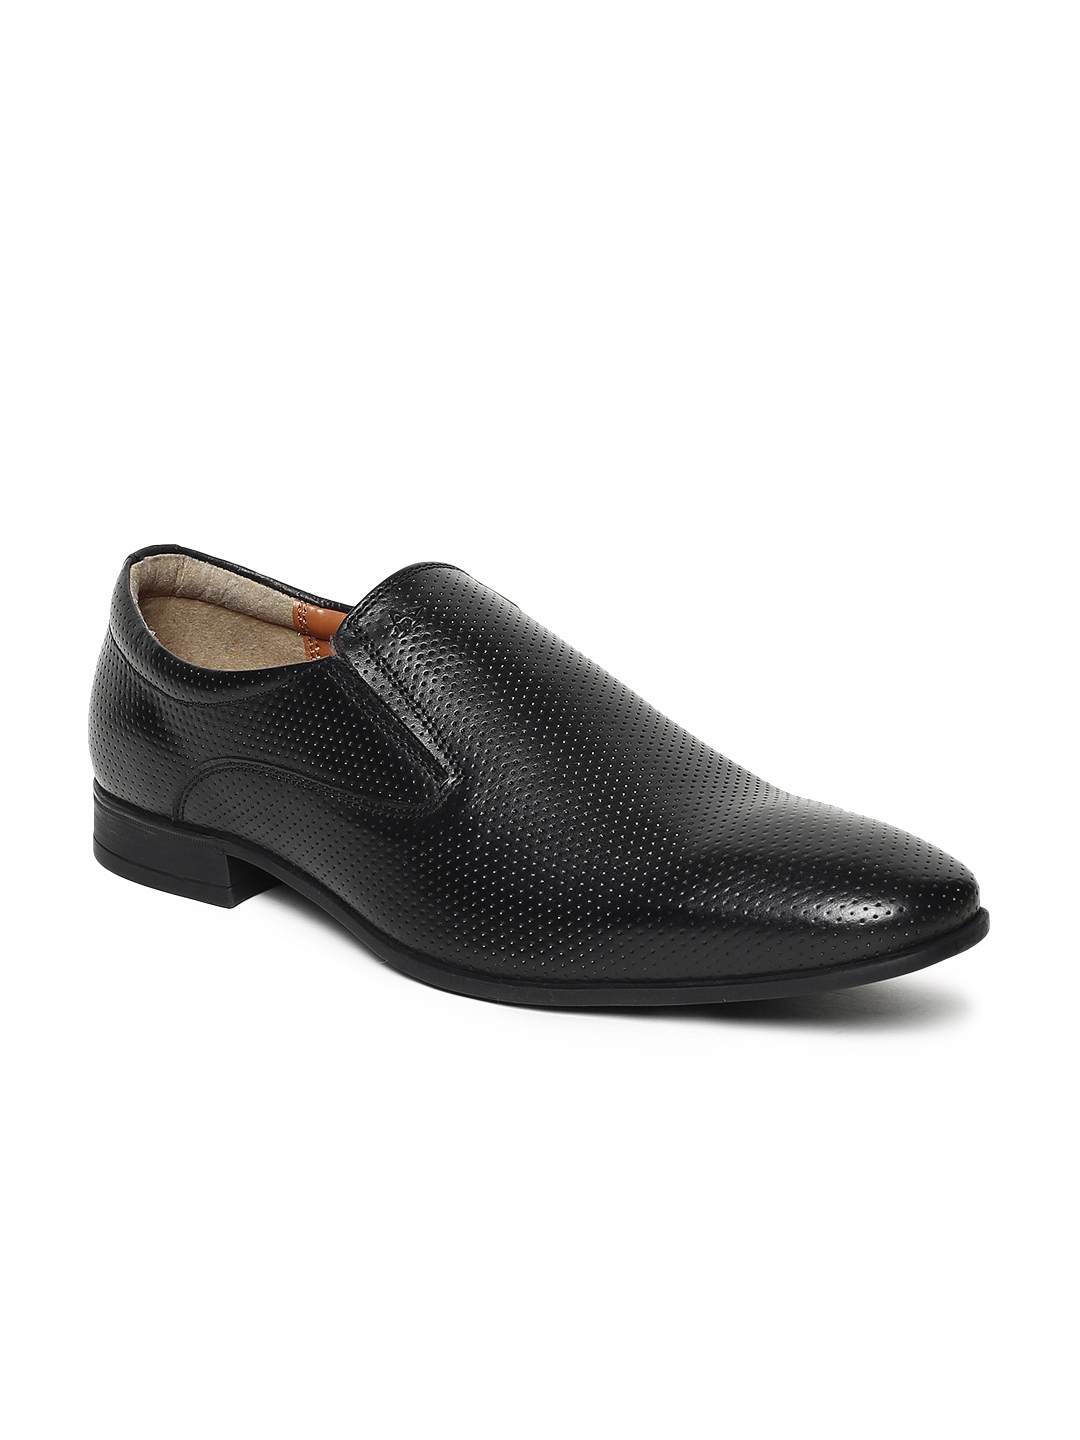 Buy Arrow Men Black Formal Leather Slip Ons - Formal Shoes for Men ...